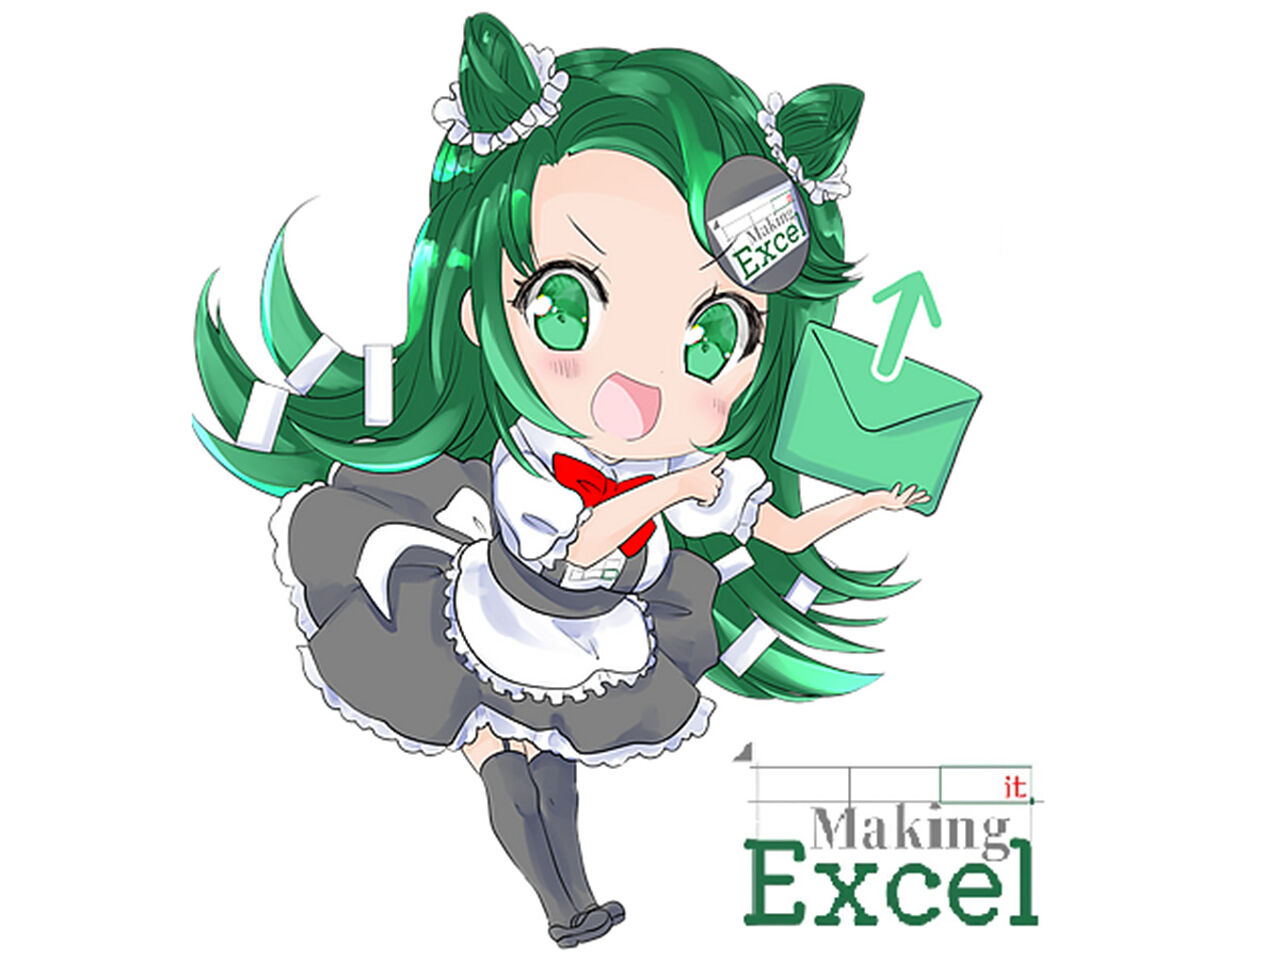 ExcelMakingitのロゴキャラクター画像